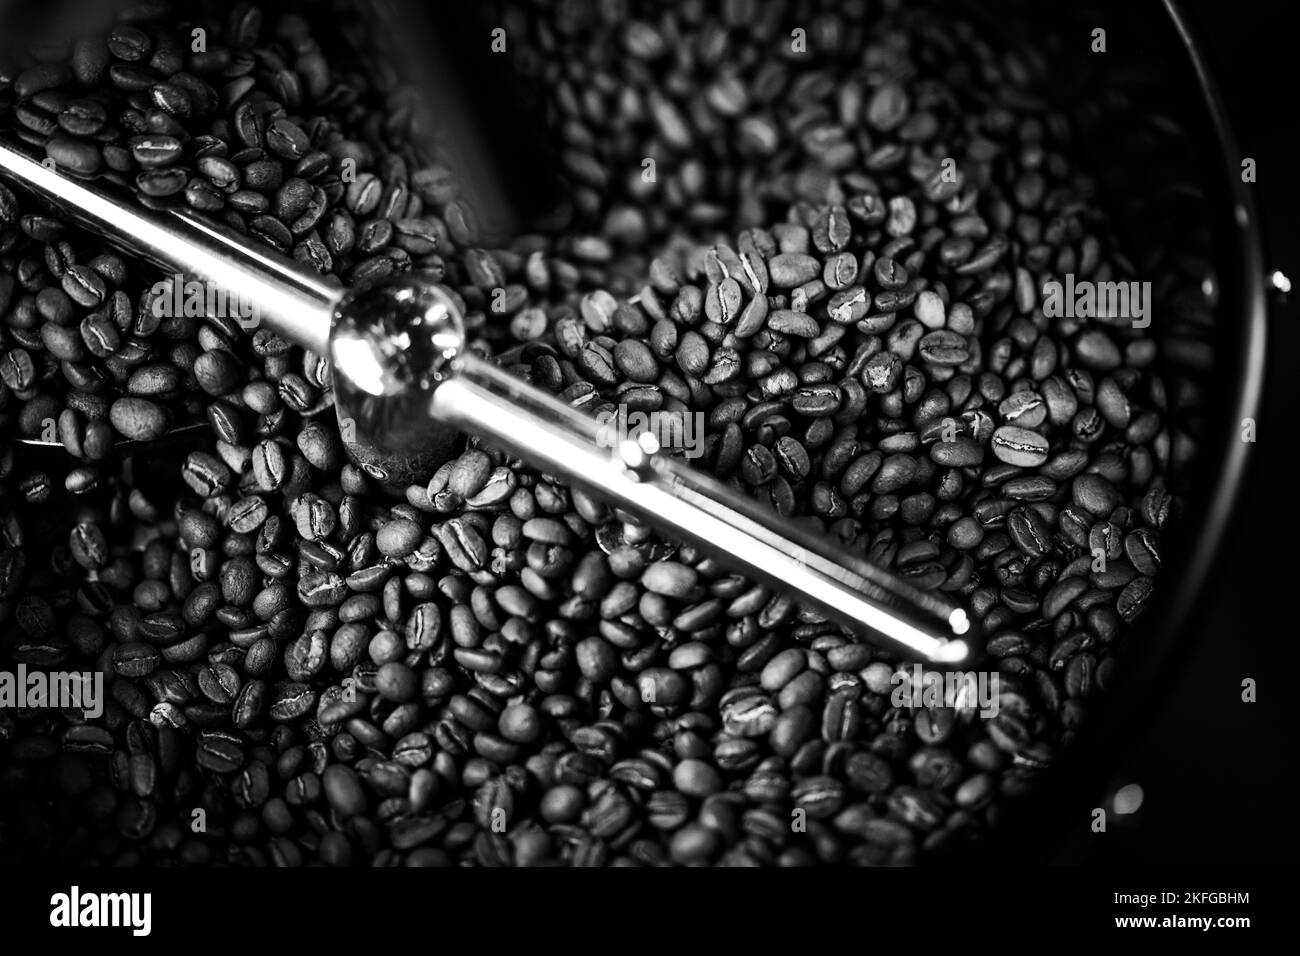 Grains de café dans une machine à café, dans des couleurs sombres. Banque D'Images